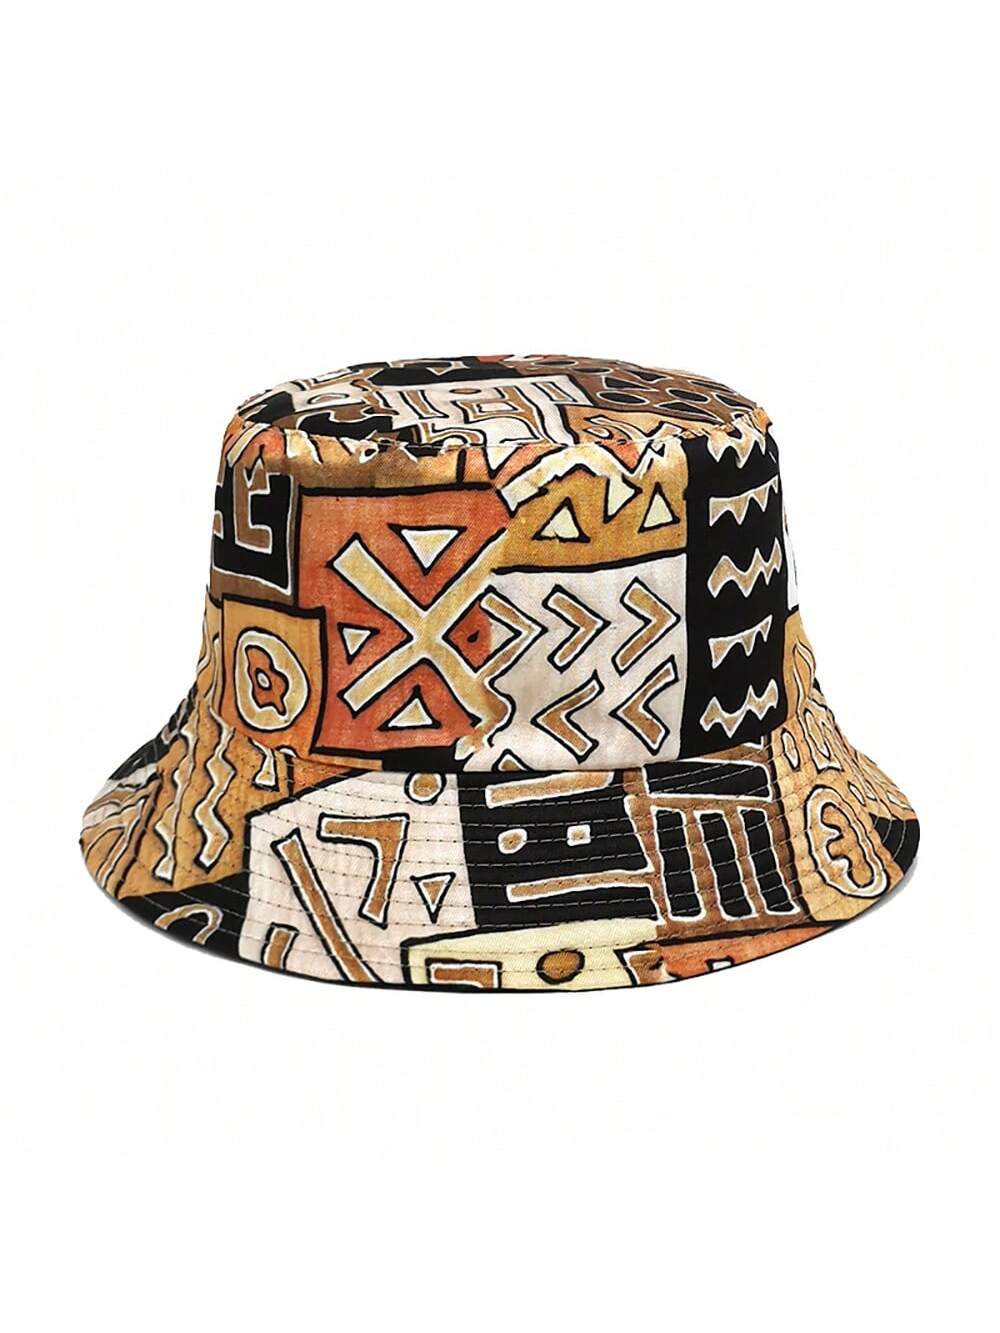 Винтажная двусторонняя панама с геометрическим принтом для мужчин и женщин, хаки большая двусторонняя хлопковая кепка для рыбалки пляжная кепка мужская кепка в стиле хип хоп панама шляпа на плоской подошве шляпа в рыб